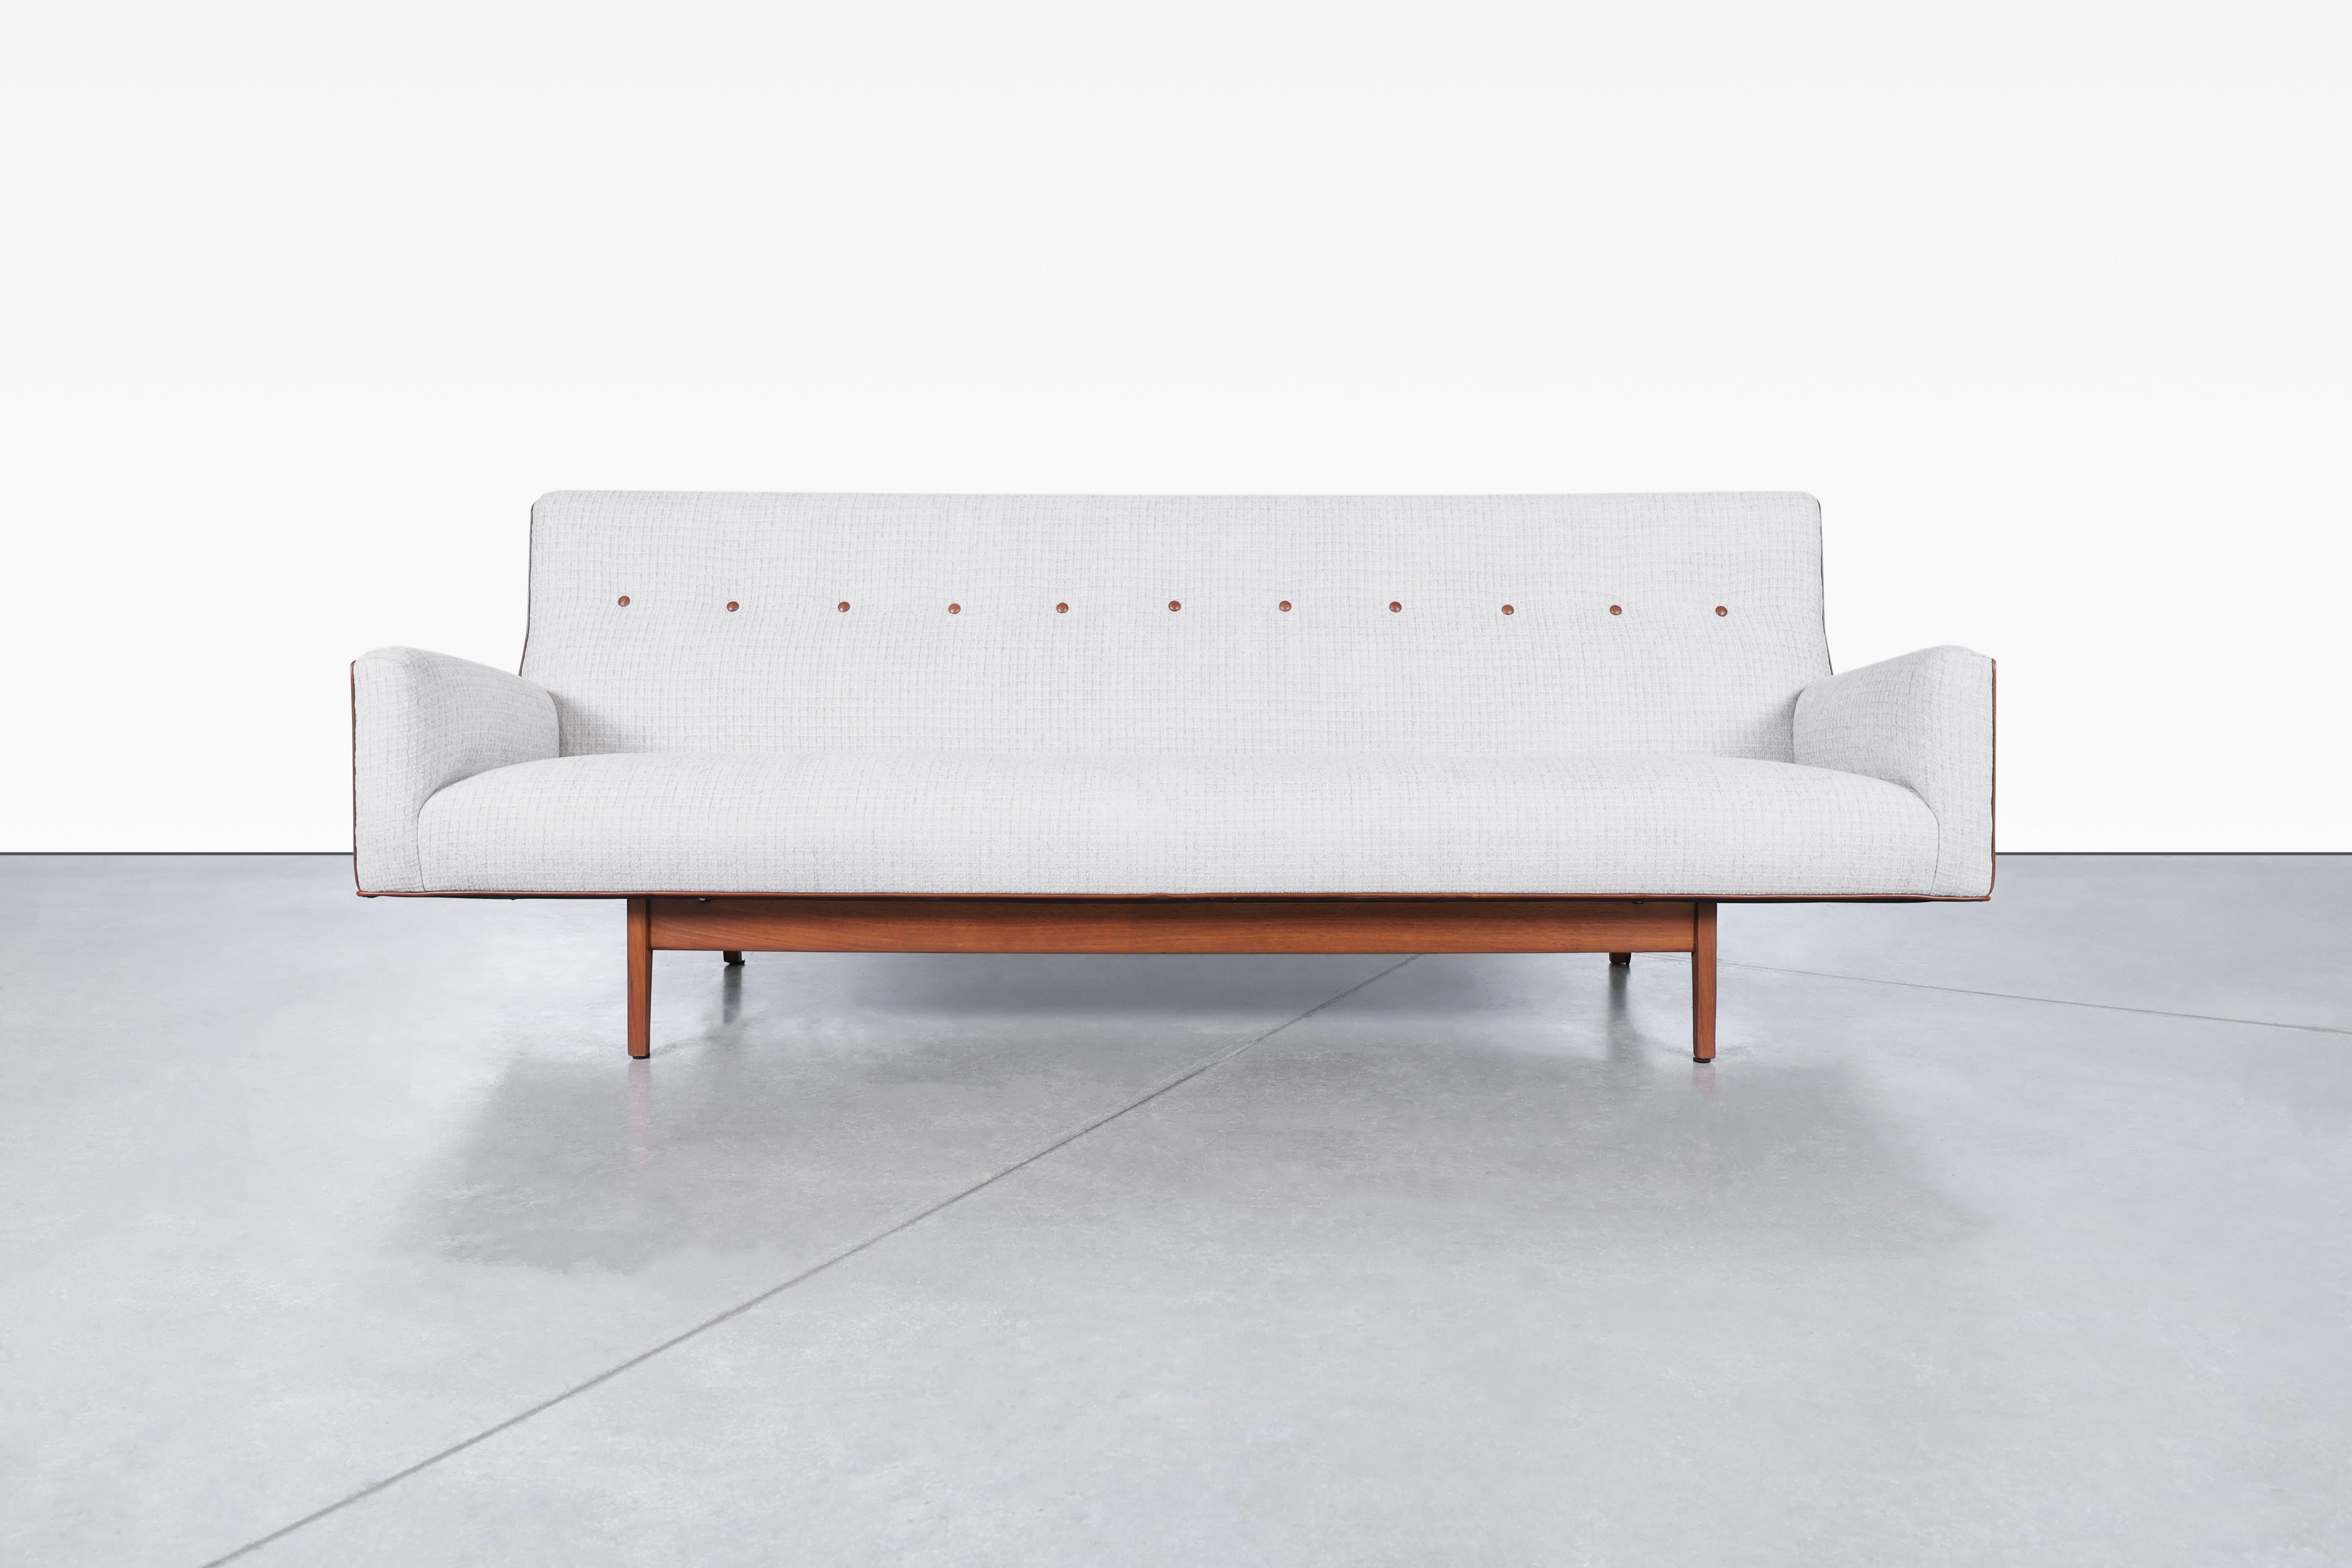 Vintage-Sofa aus Nussbaumholz, entworfen von dem legendären Designer Jens Risom in den Vereinigten Staaten, ca. 1950er Jahre. Verwandeln Sie Ihren Wohnbereich mit diesem exquisit aufgearbeiteten und neu gepolsterten Designklassiker. Die Kombination